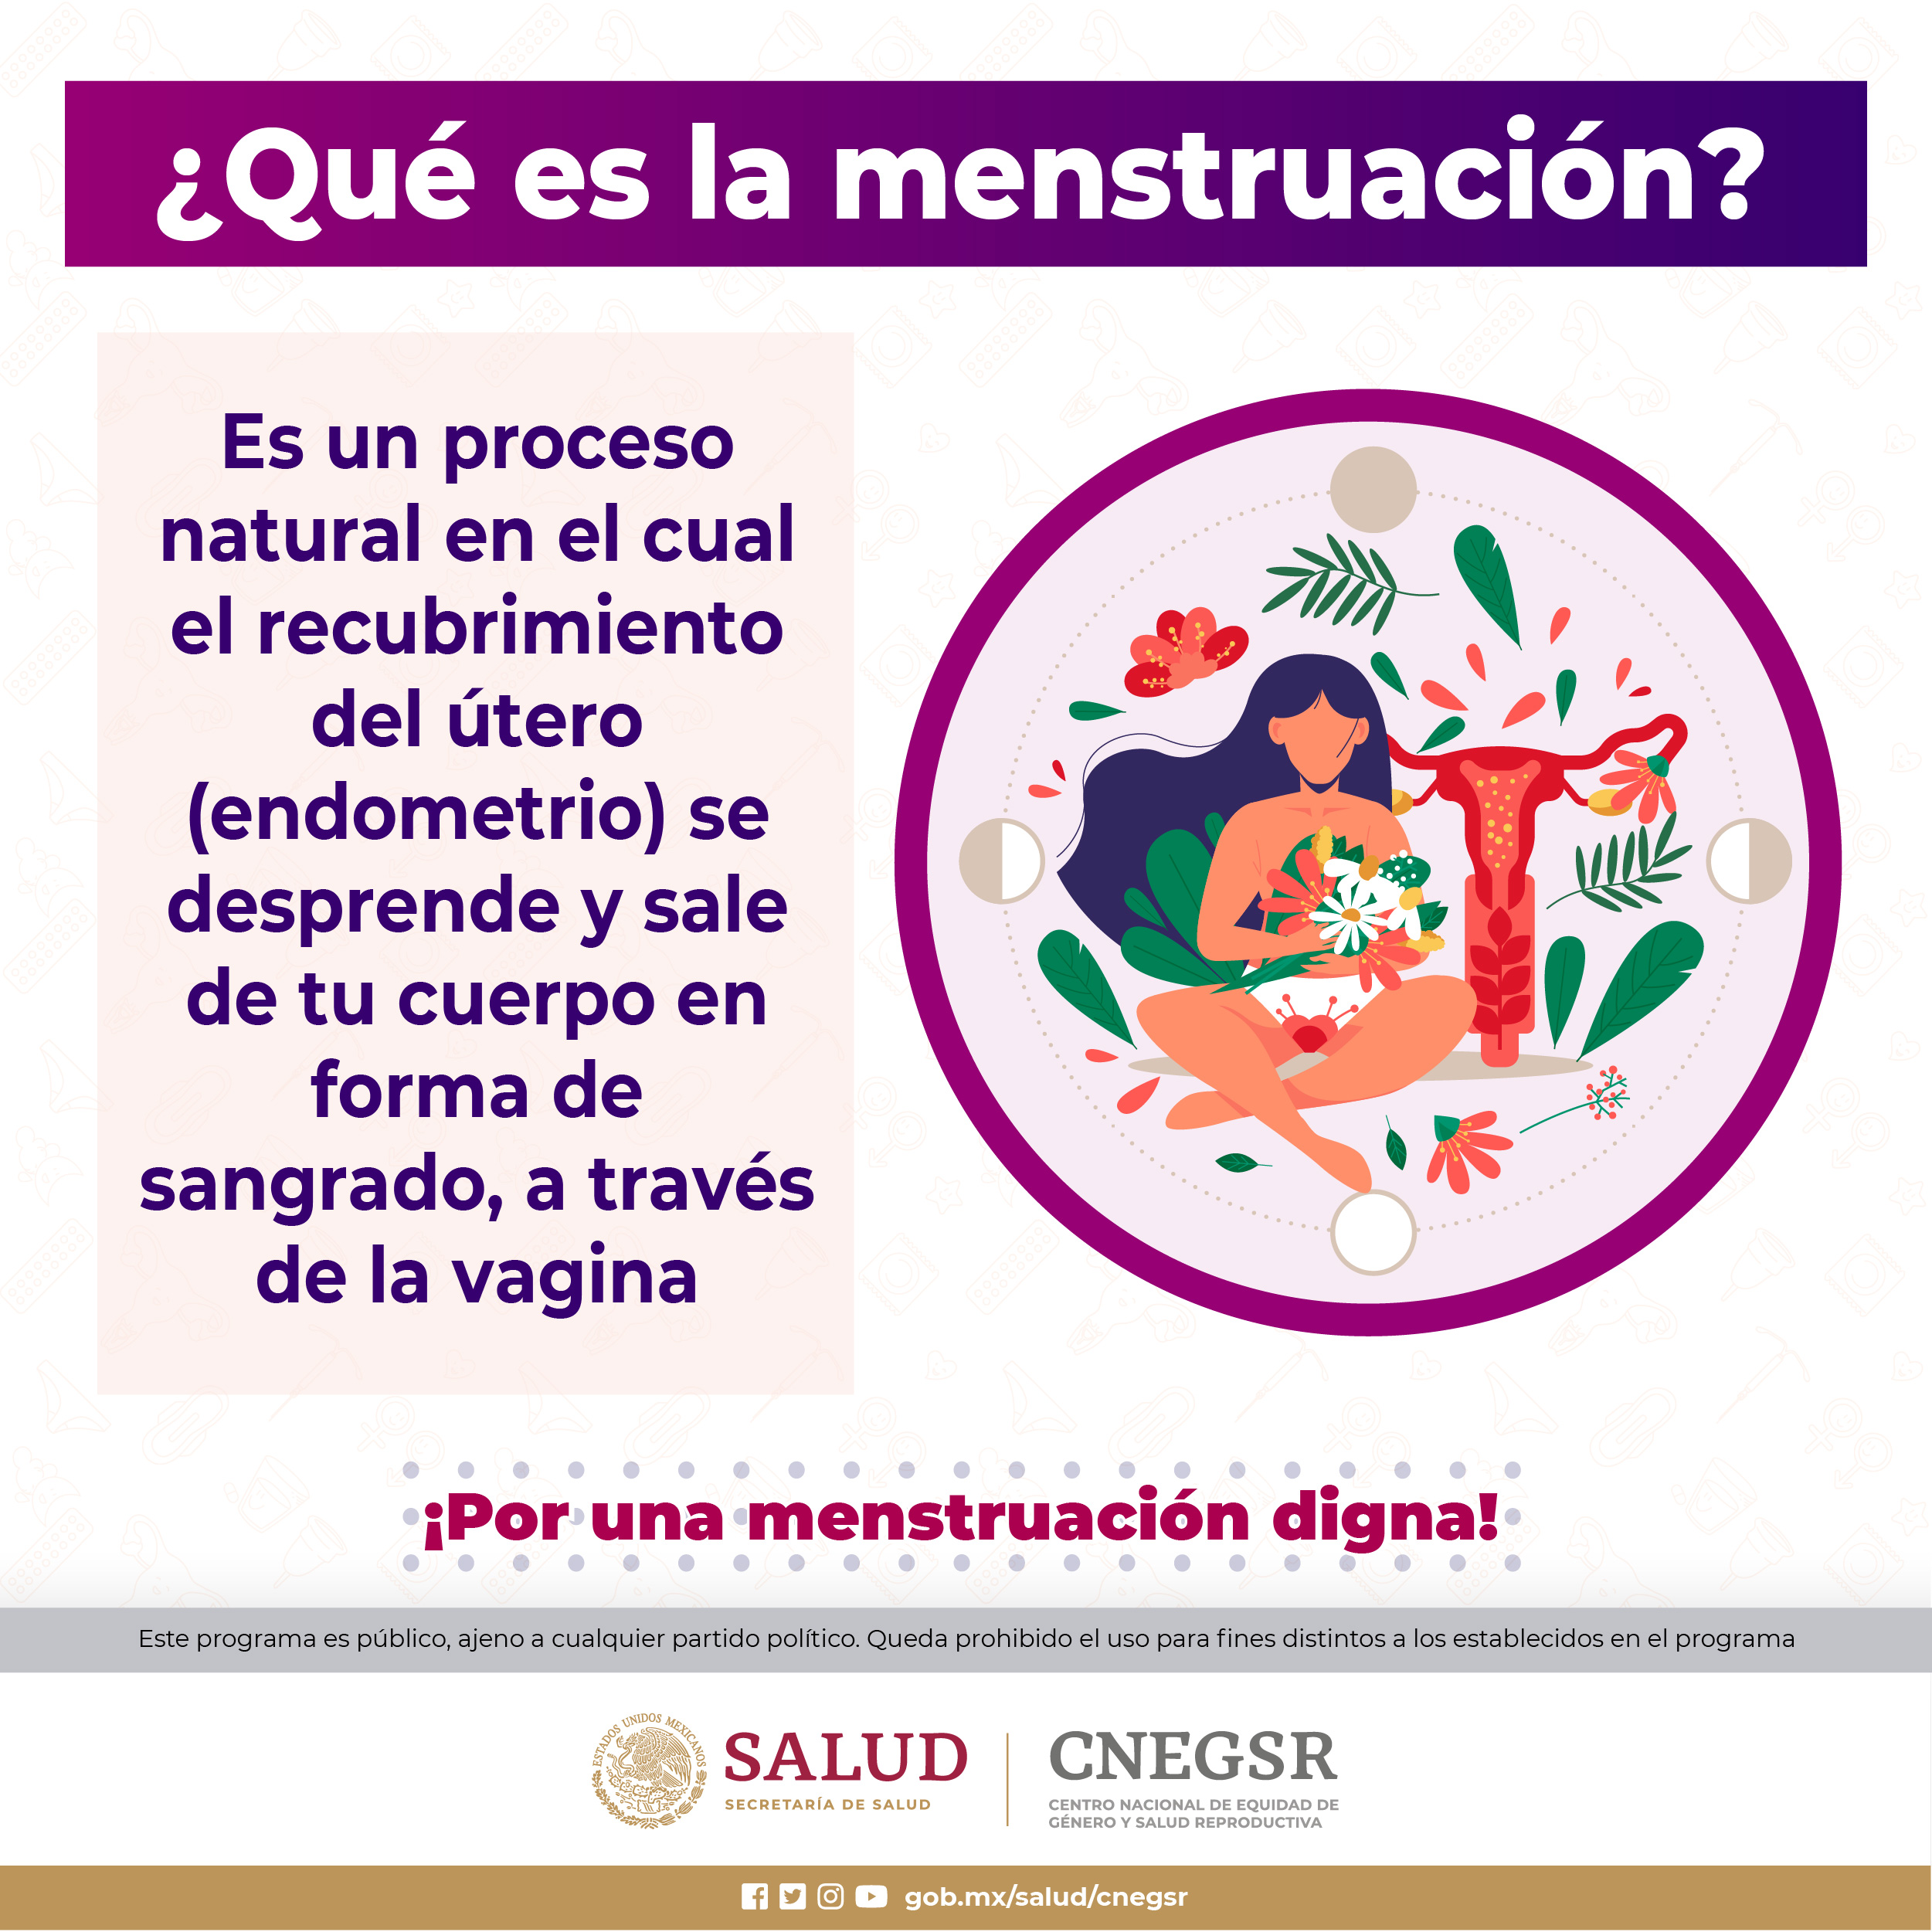 1_Carrusel_Que es la Menstruacion_1.jpg